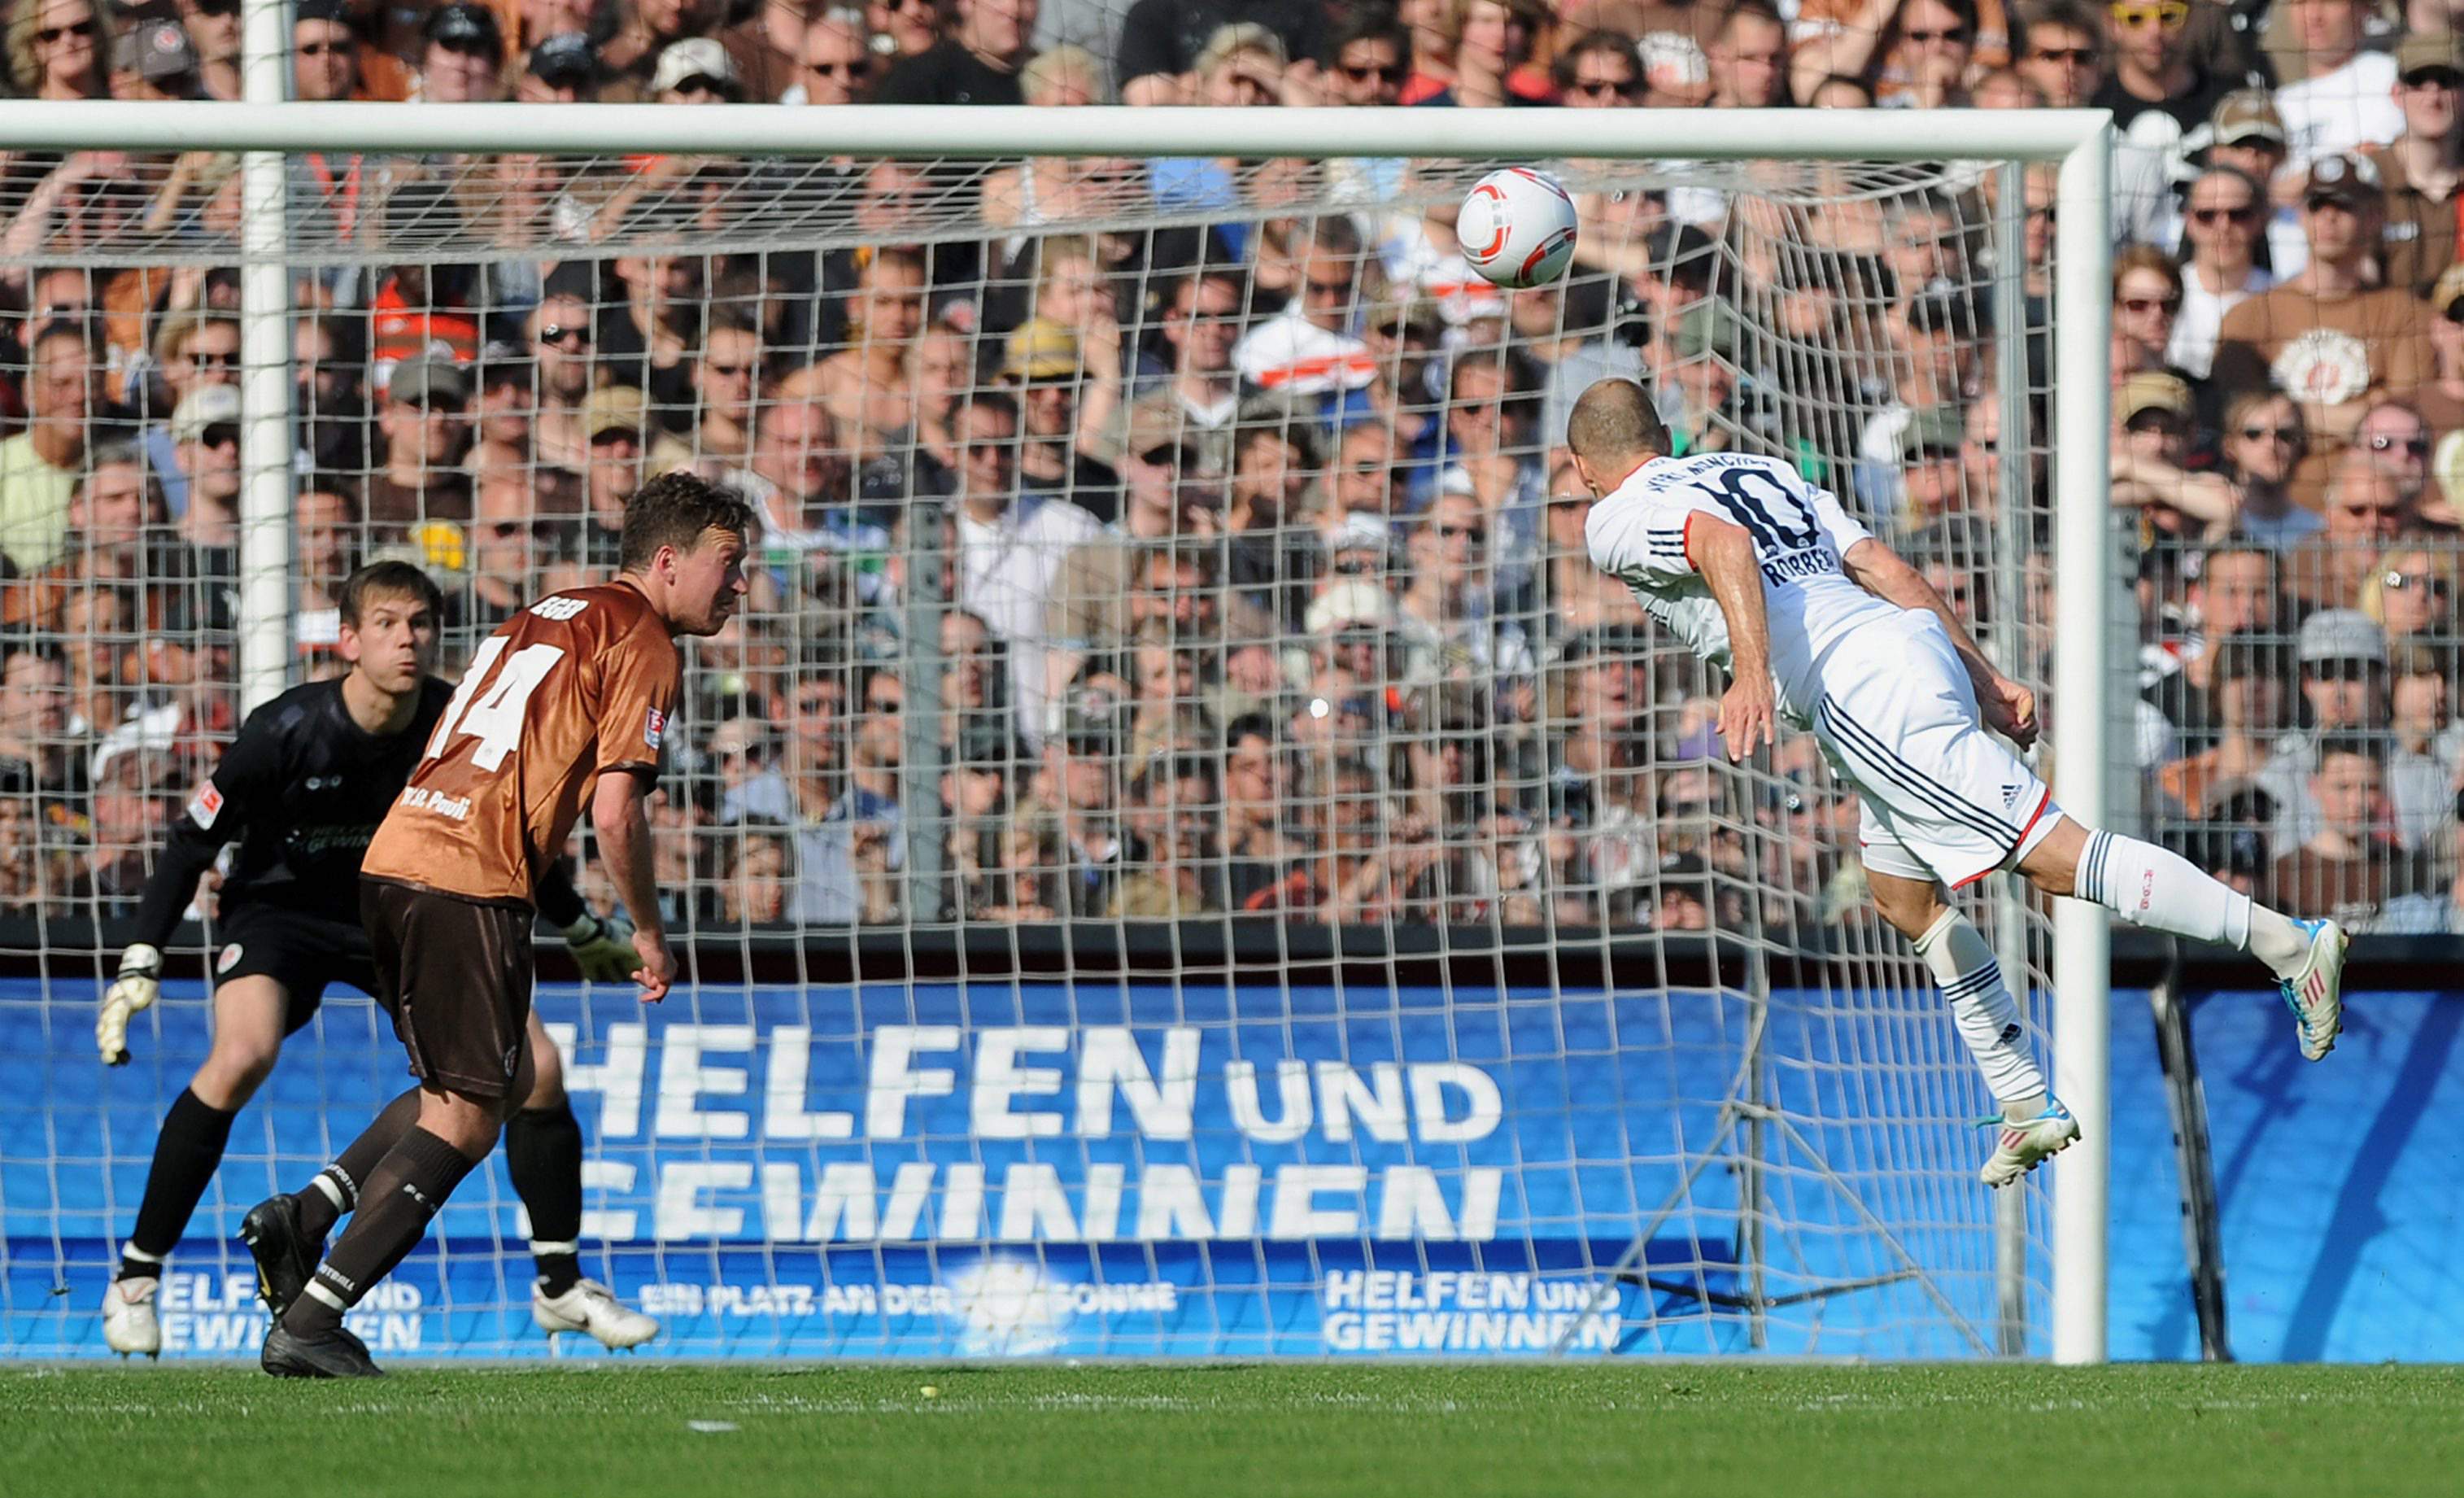 Arjen Robben (re.) erzielte per Kopf das zwischenzeitliche 6:1 für Bayern München, kurz zuvor hatte Marcel Eger (li.) auf der Gegenseite getroffen.